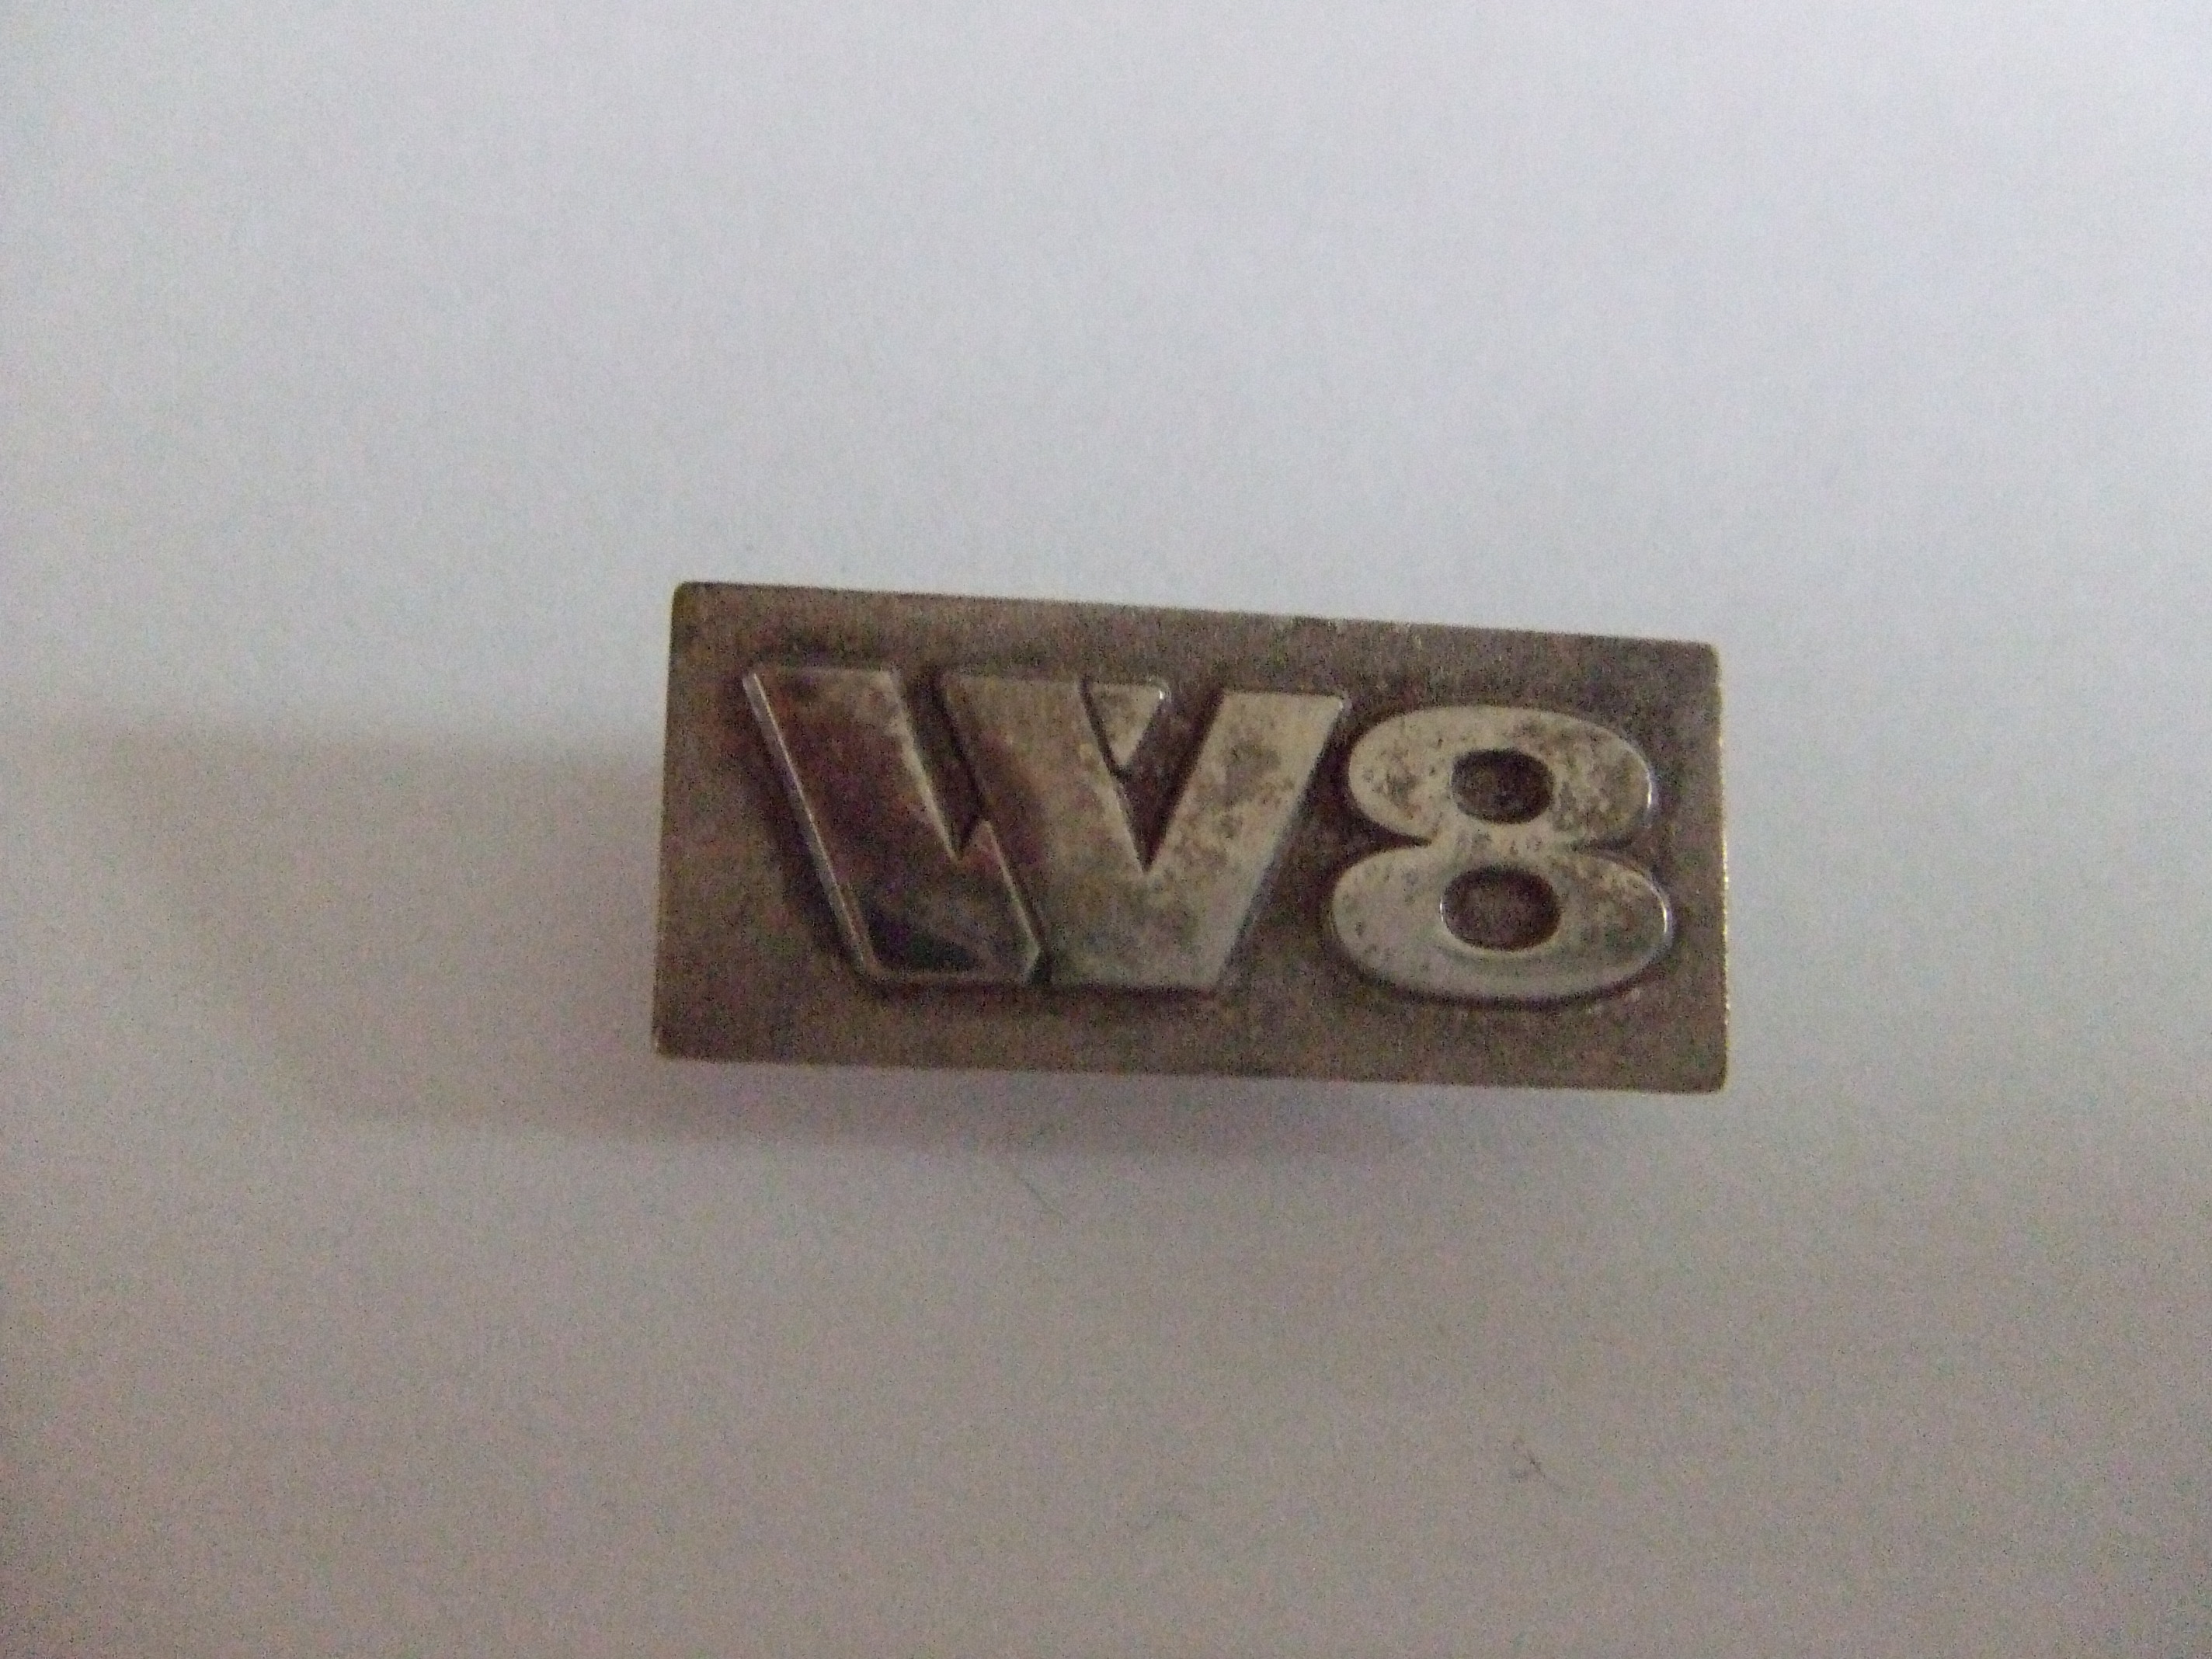 Volkswagen W8 motor logo